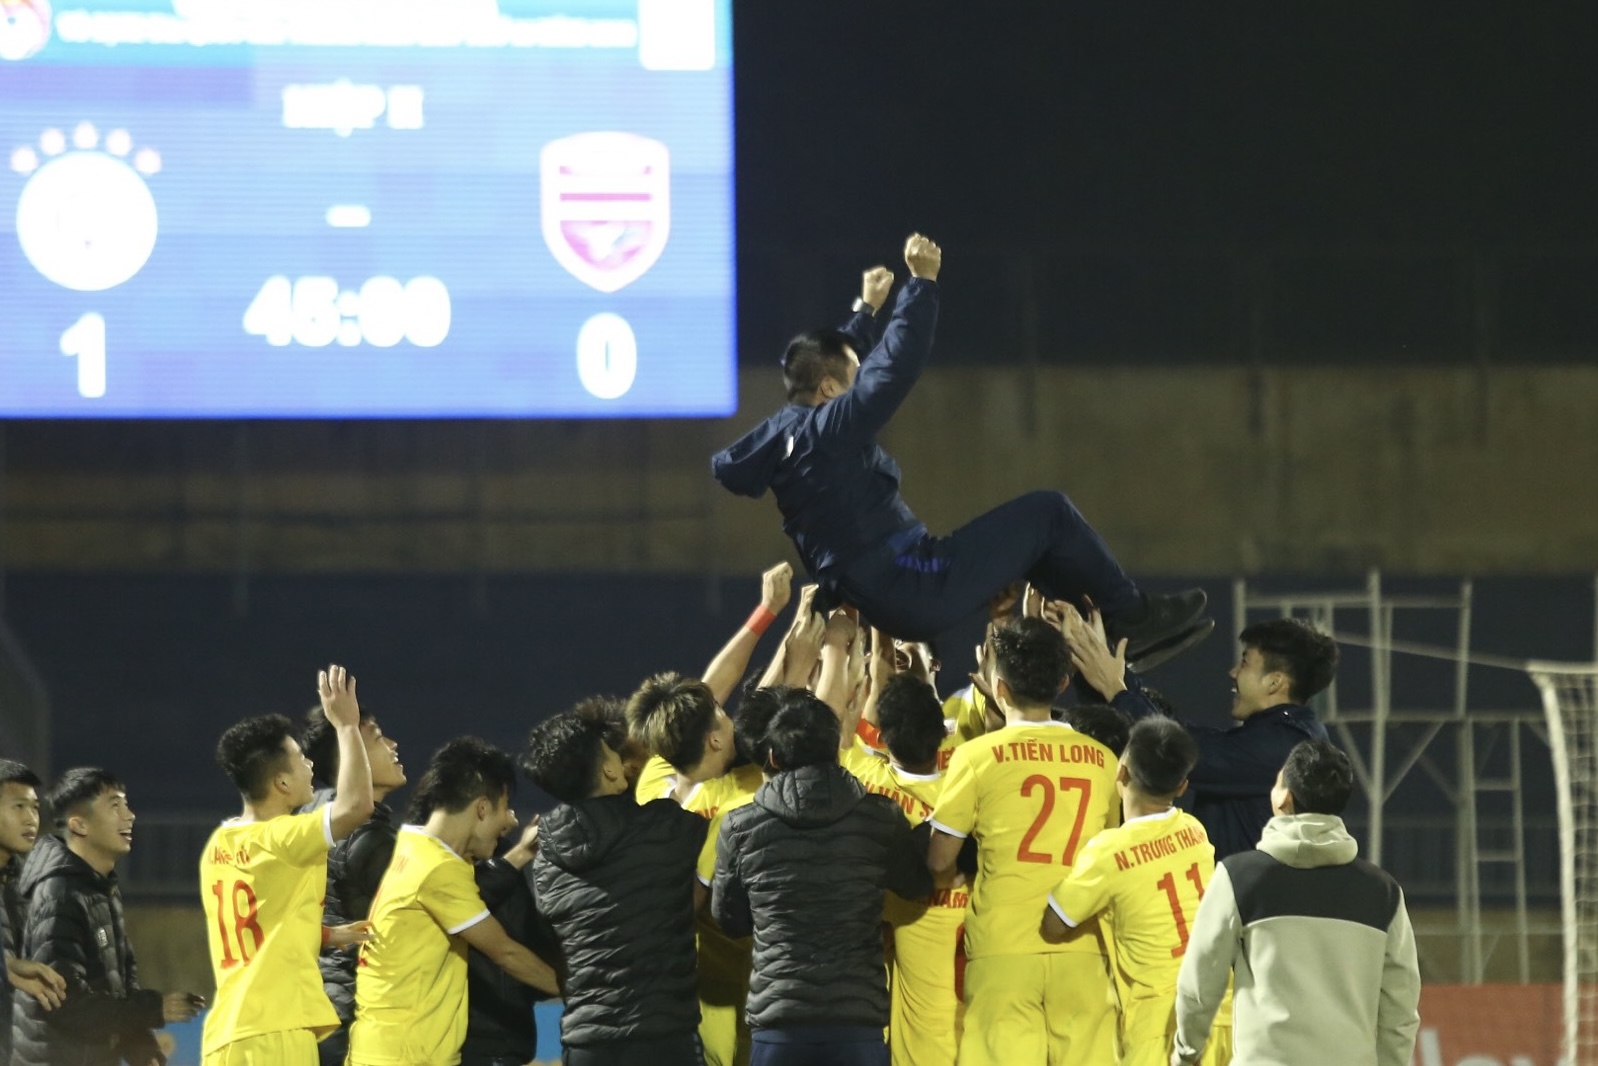 U21 Hà Nội vô địch U21 Quốc gia: Cảm xúc trái ngược giữa U21 Bình Dương và nhà vô địch - Ảnh 15.